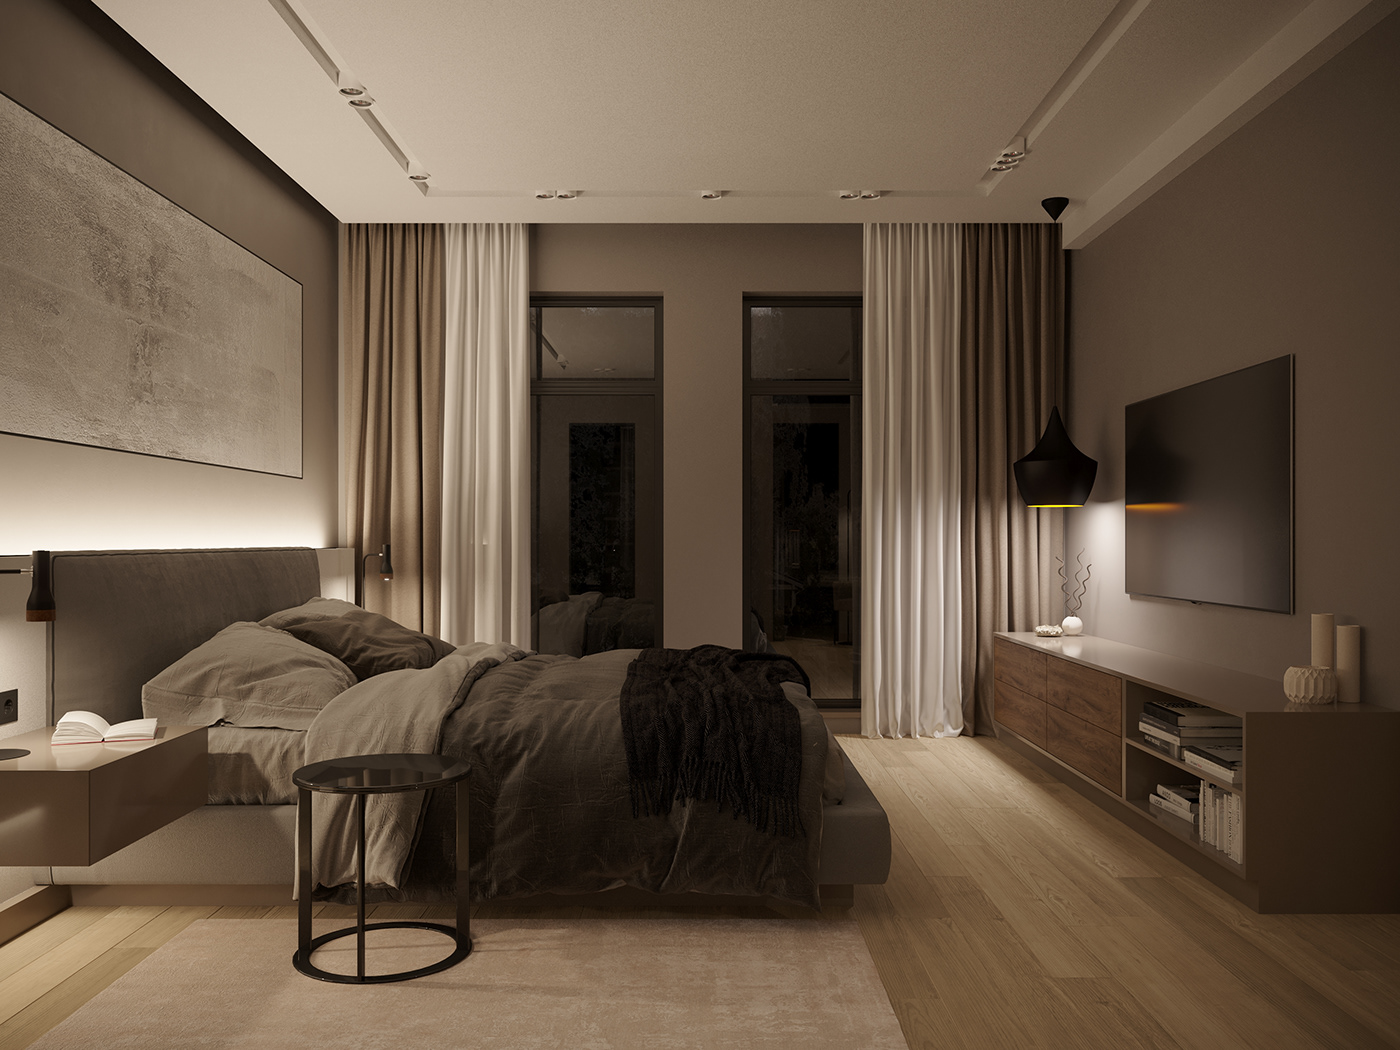 Camera da letto 2022: stili, colori, materiali, mobili e idee di arredo -  Hackrea